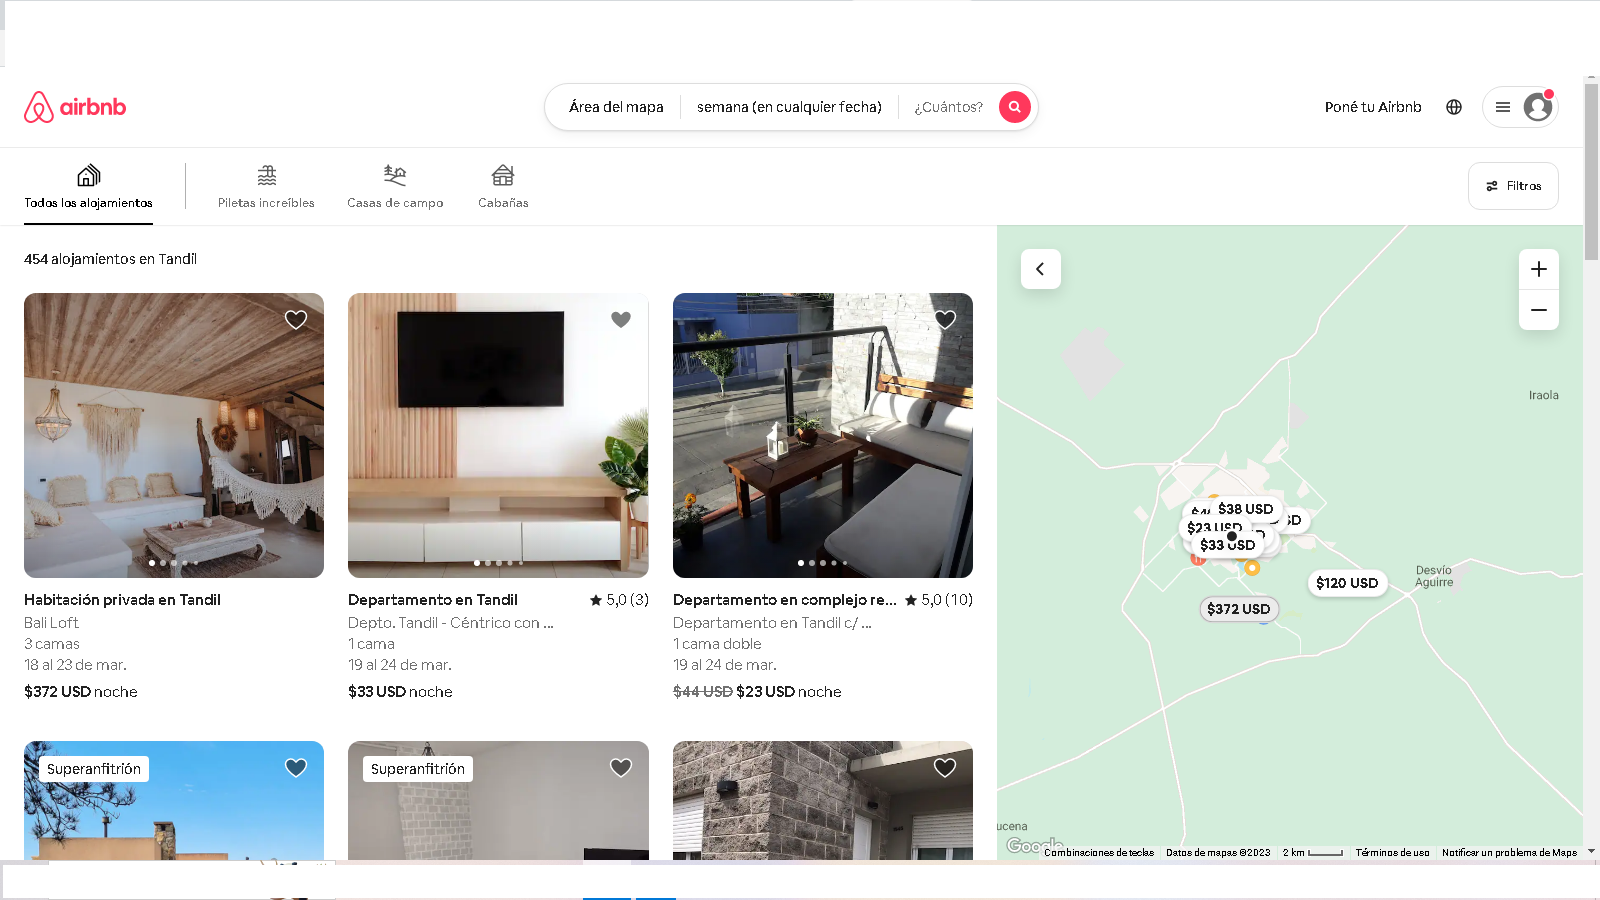 El “efecto Airbnb” en Tandil: departamentos en dólares, alta rentabilidad en pocos días de alquiler y escasa regulación municipal